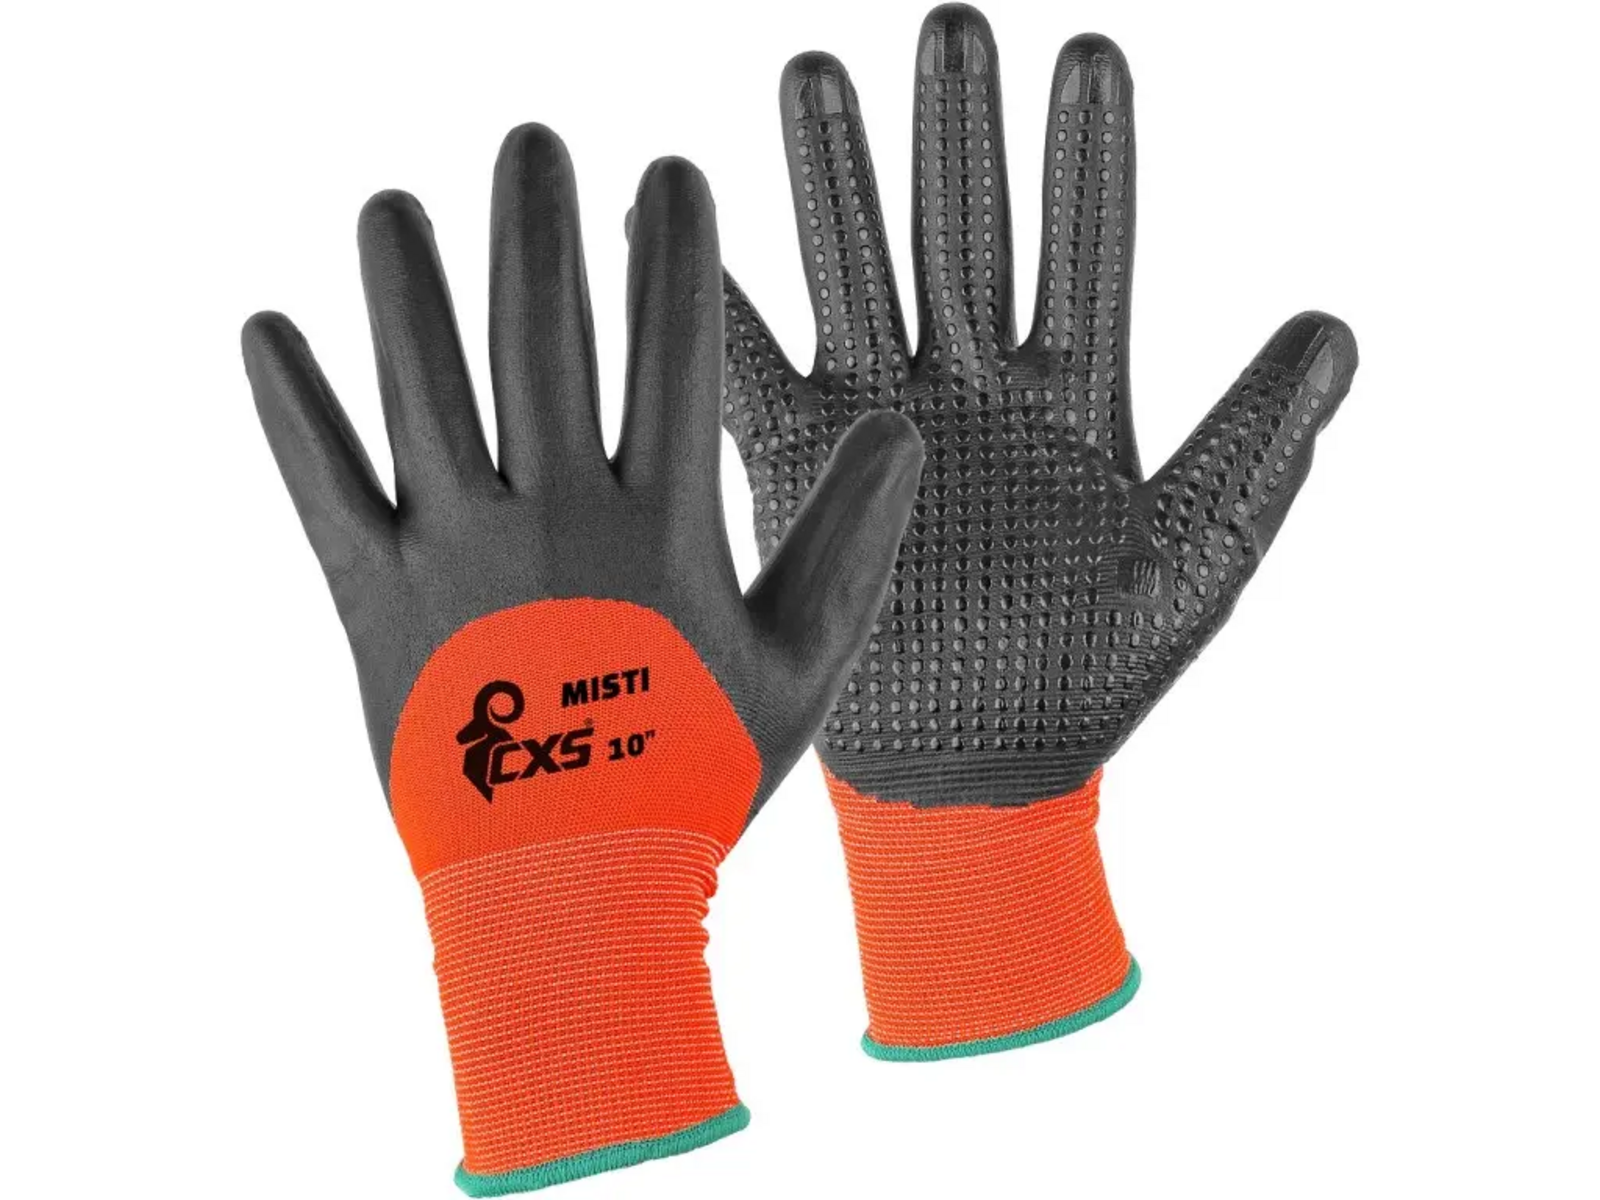 Povrstvené rukavice CXS Misti - veľkosť: 8/M, farba: oranžová/sivá